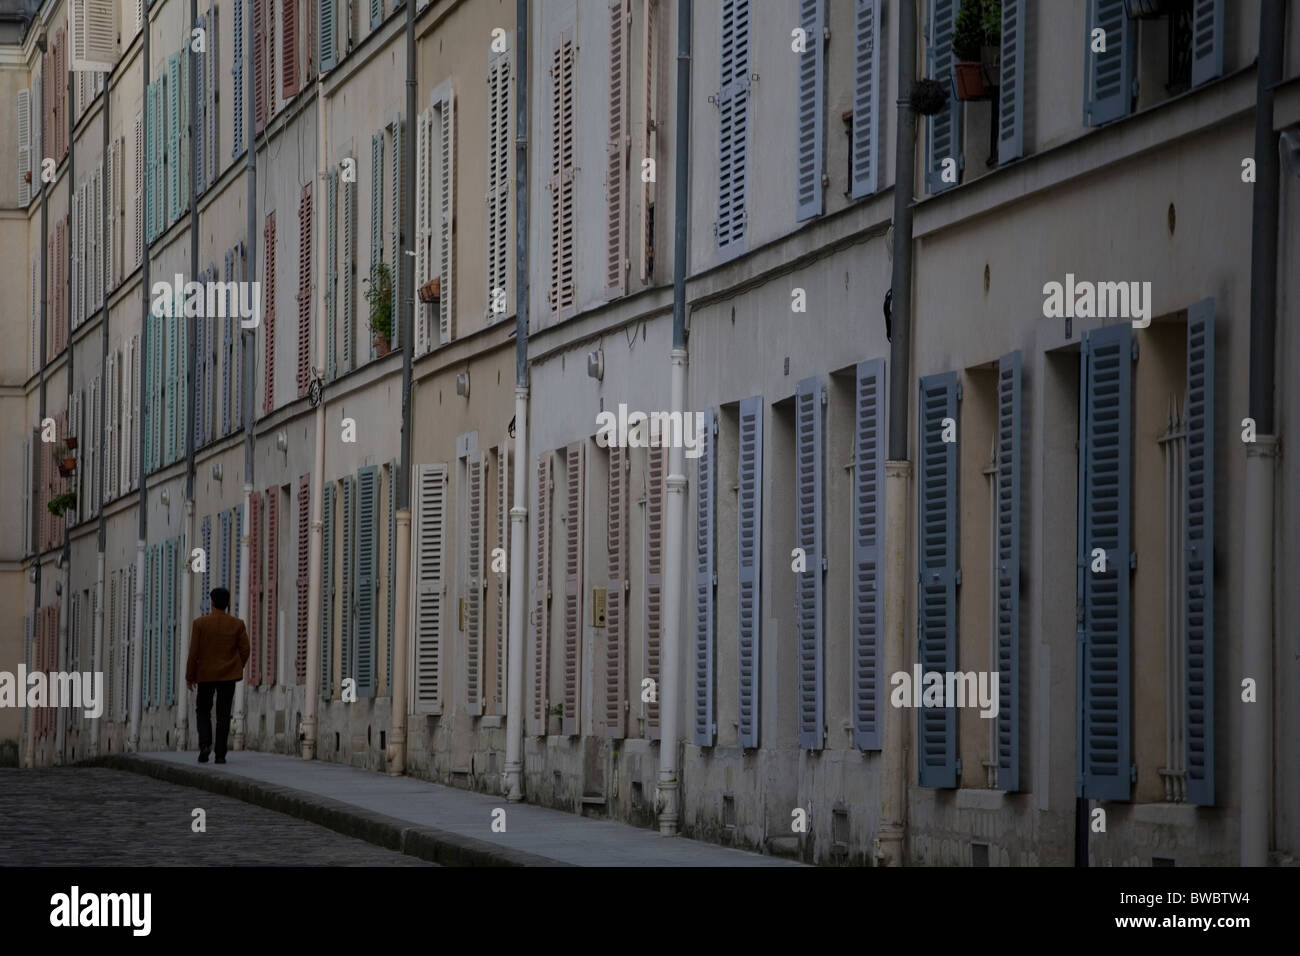 Straße in der Jean-Luc Godard-Film "Bout de Souffle" vorgestellt Stockfoto